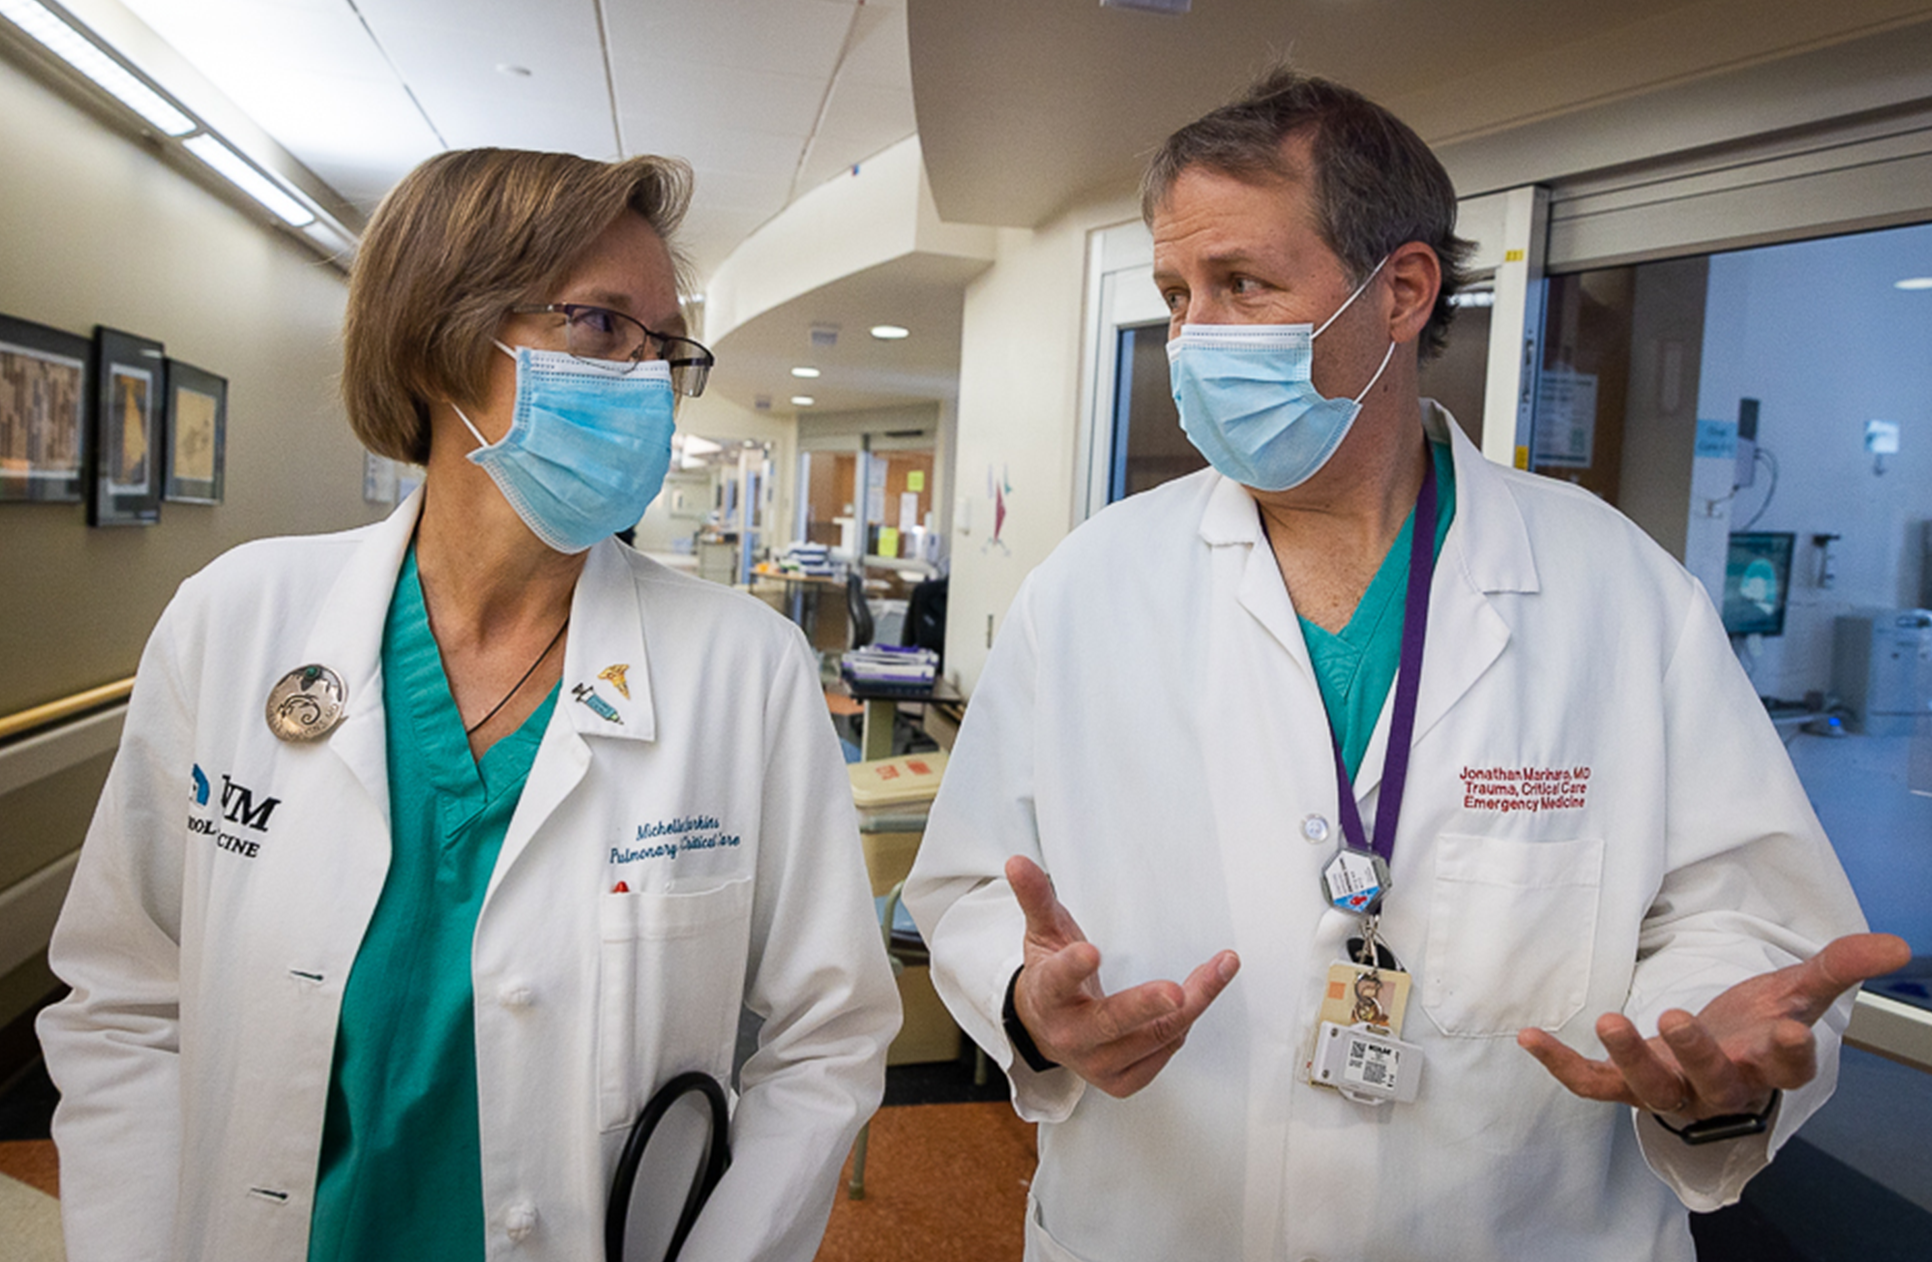 Michelle Harkins (à esquerda) e Jon Marinaro (à direita) caminham pela sala de emergência de um hospital